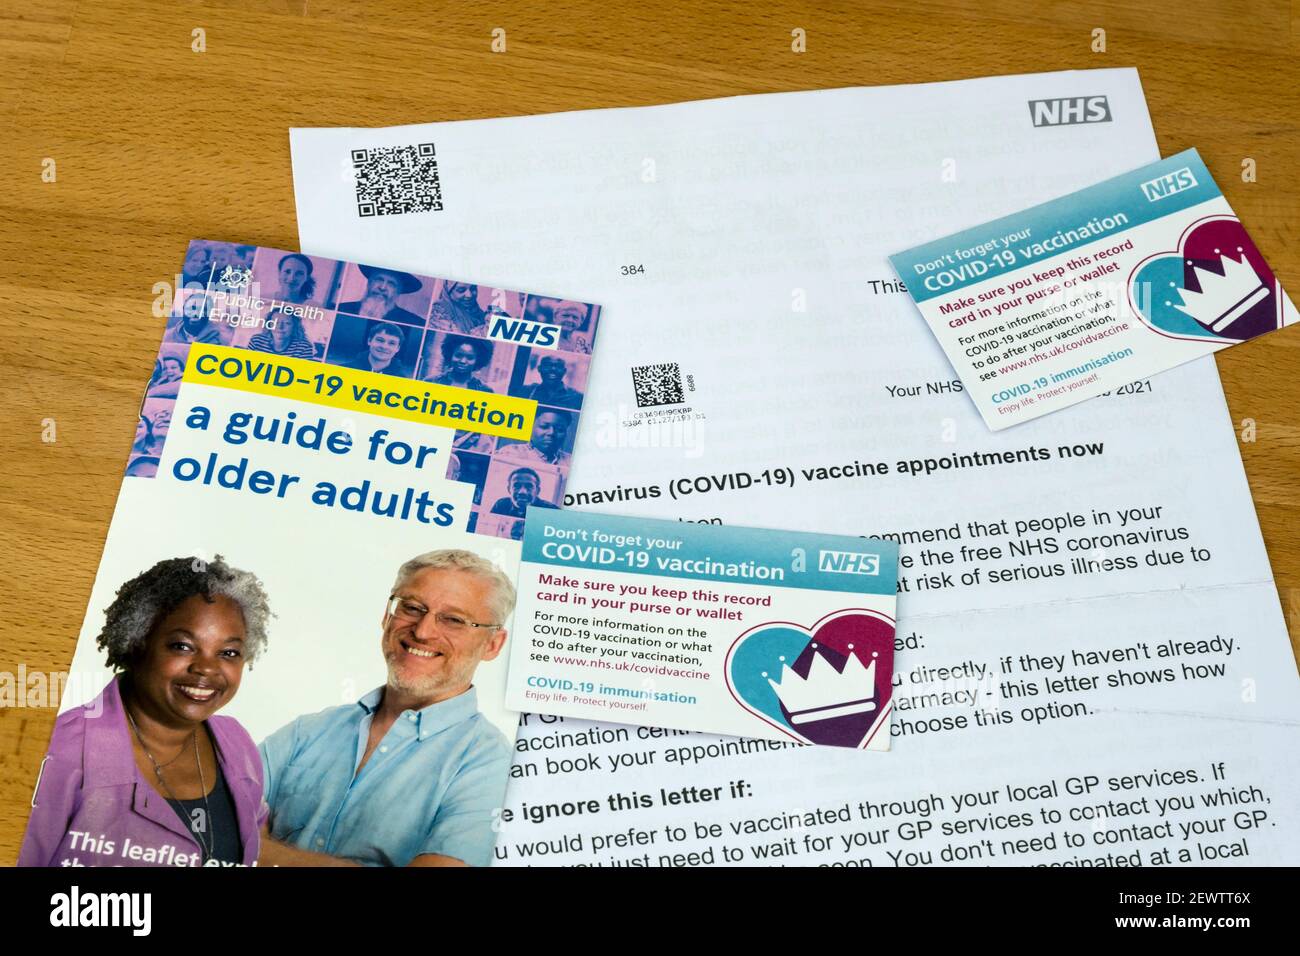 Una guida e una lettera del NHS che invita alle vaccinazioni di Covid-19 per gli adulti più anziani, con due schede di vaccinazione di Covid-19. Foto Stock